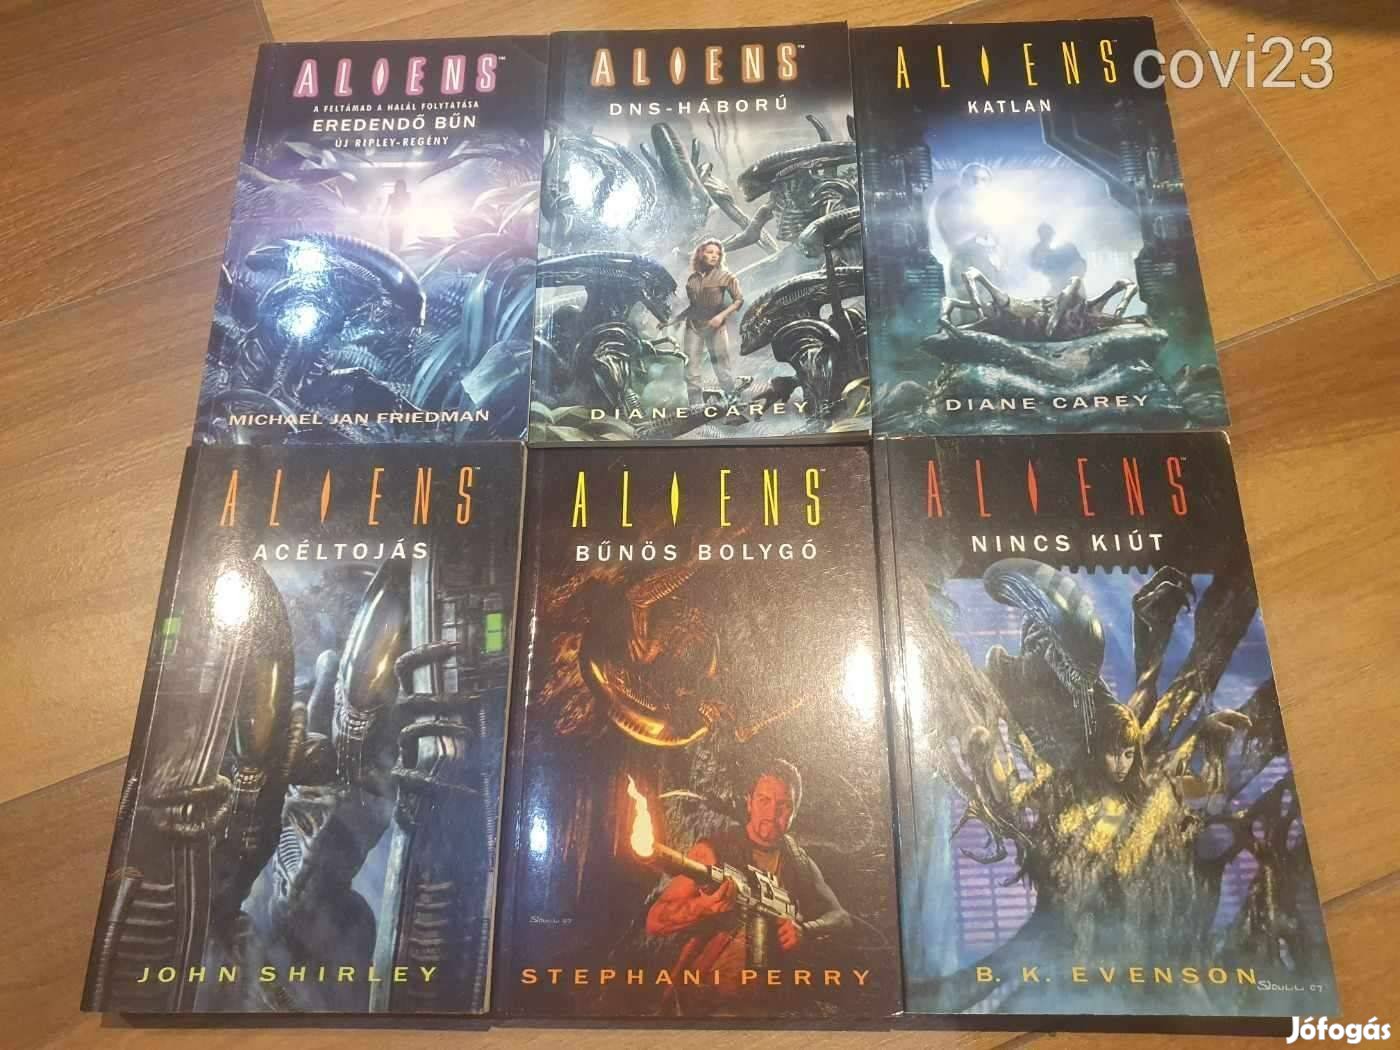 Alien könyvek 1-6 második nagyon ritka sorozat (2005-2010) újszerűek